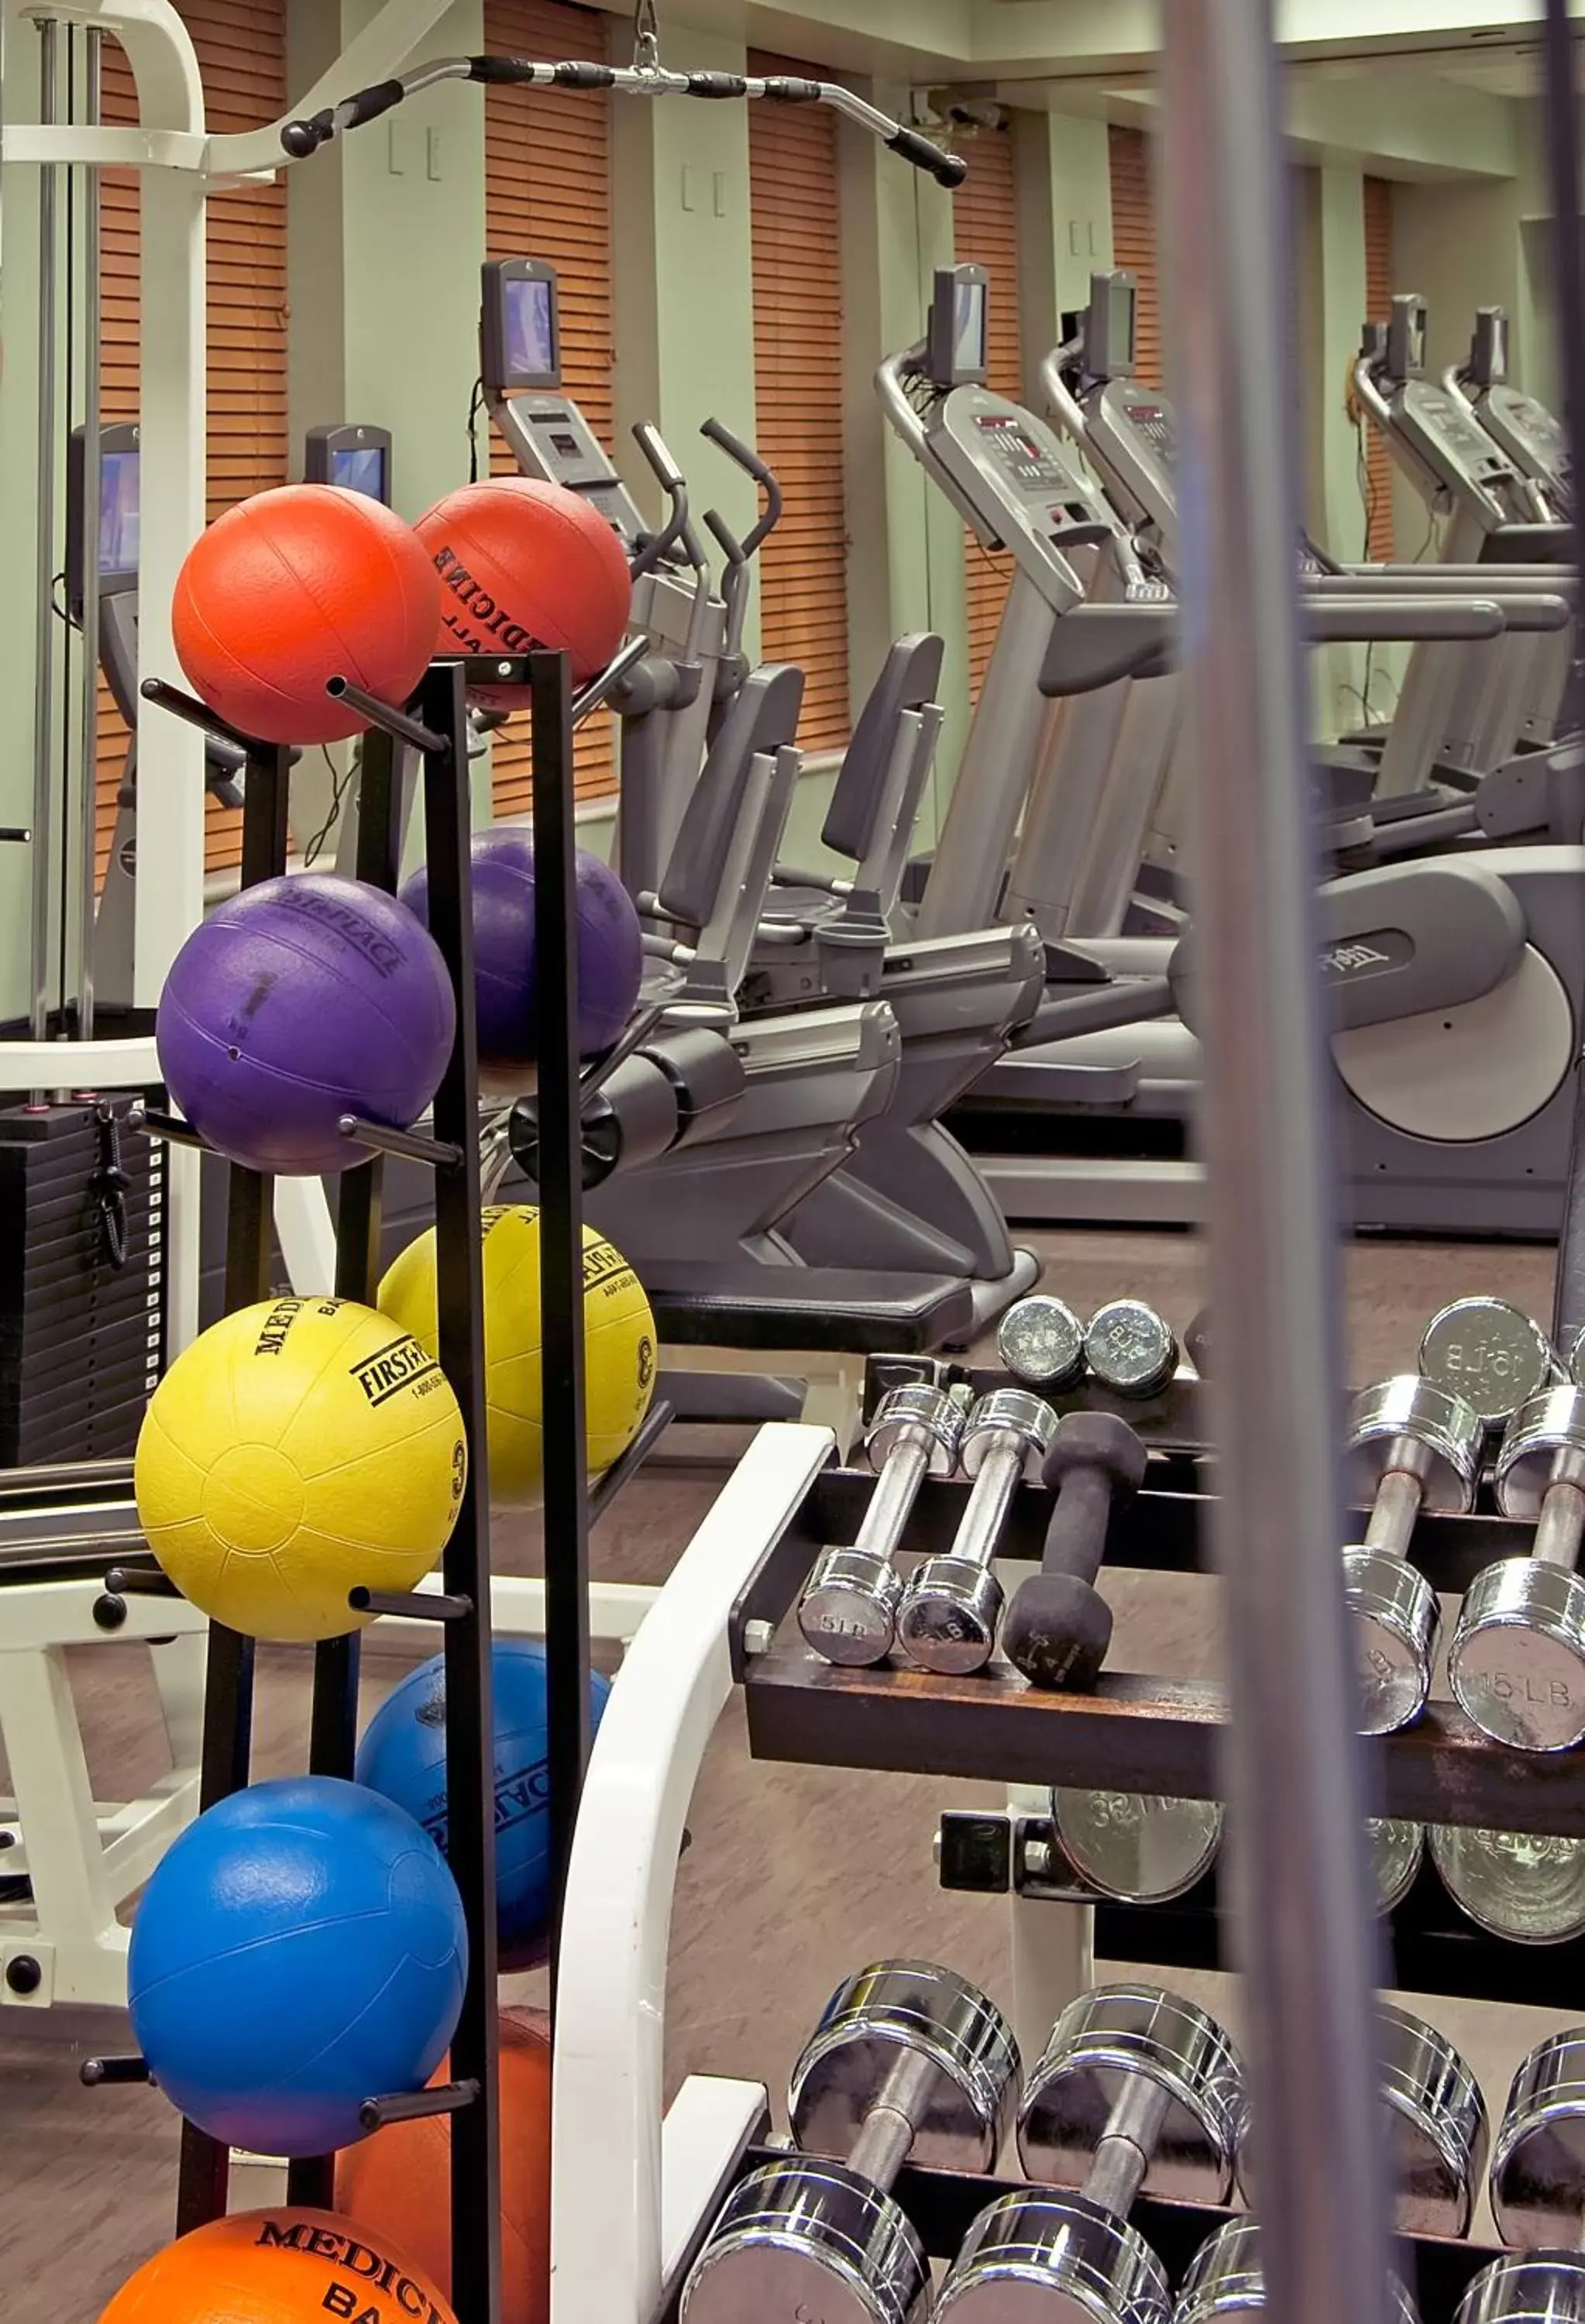 Fitness centre/facilities, Fitness Center/Facilities in The Benjamin Royal Sonesta New York